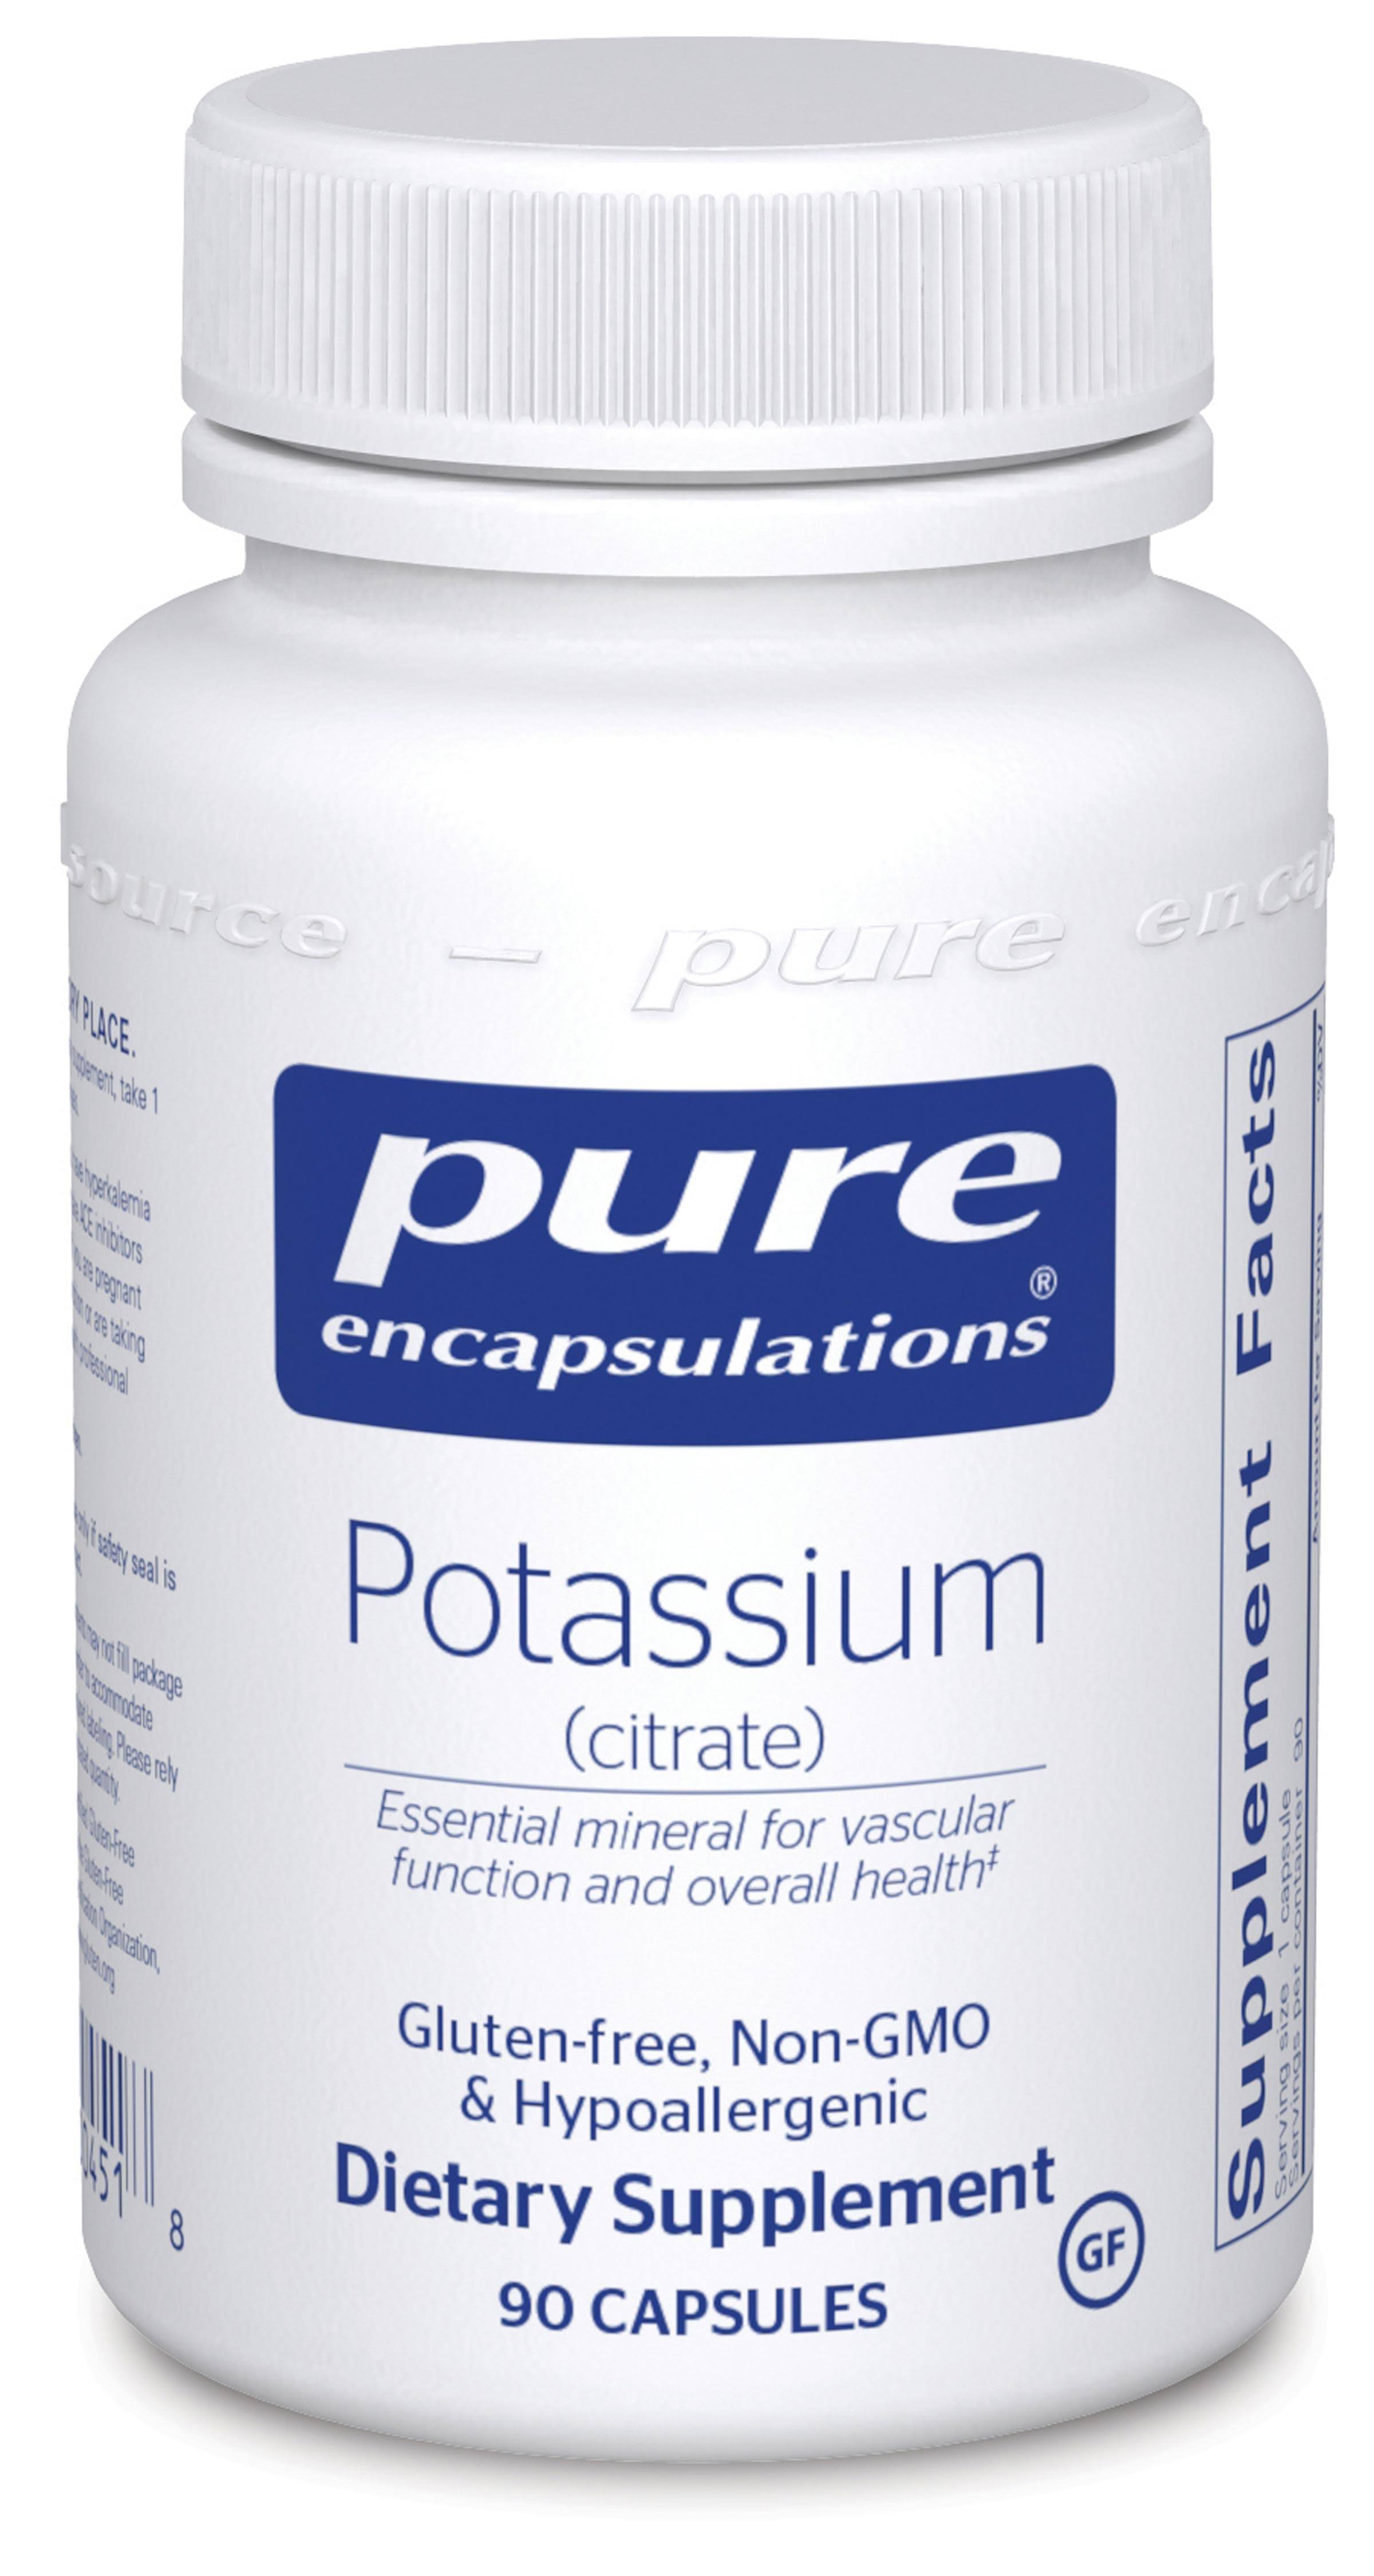 Pure Encapsulations Potassium Dietary Supplement - 90 Vegetable Capsules